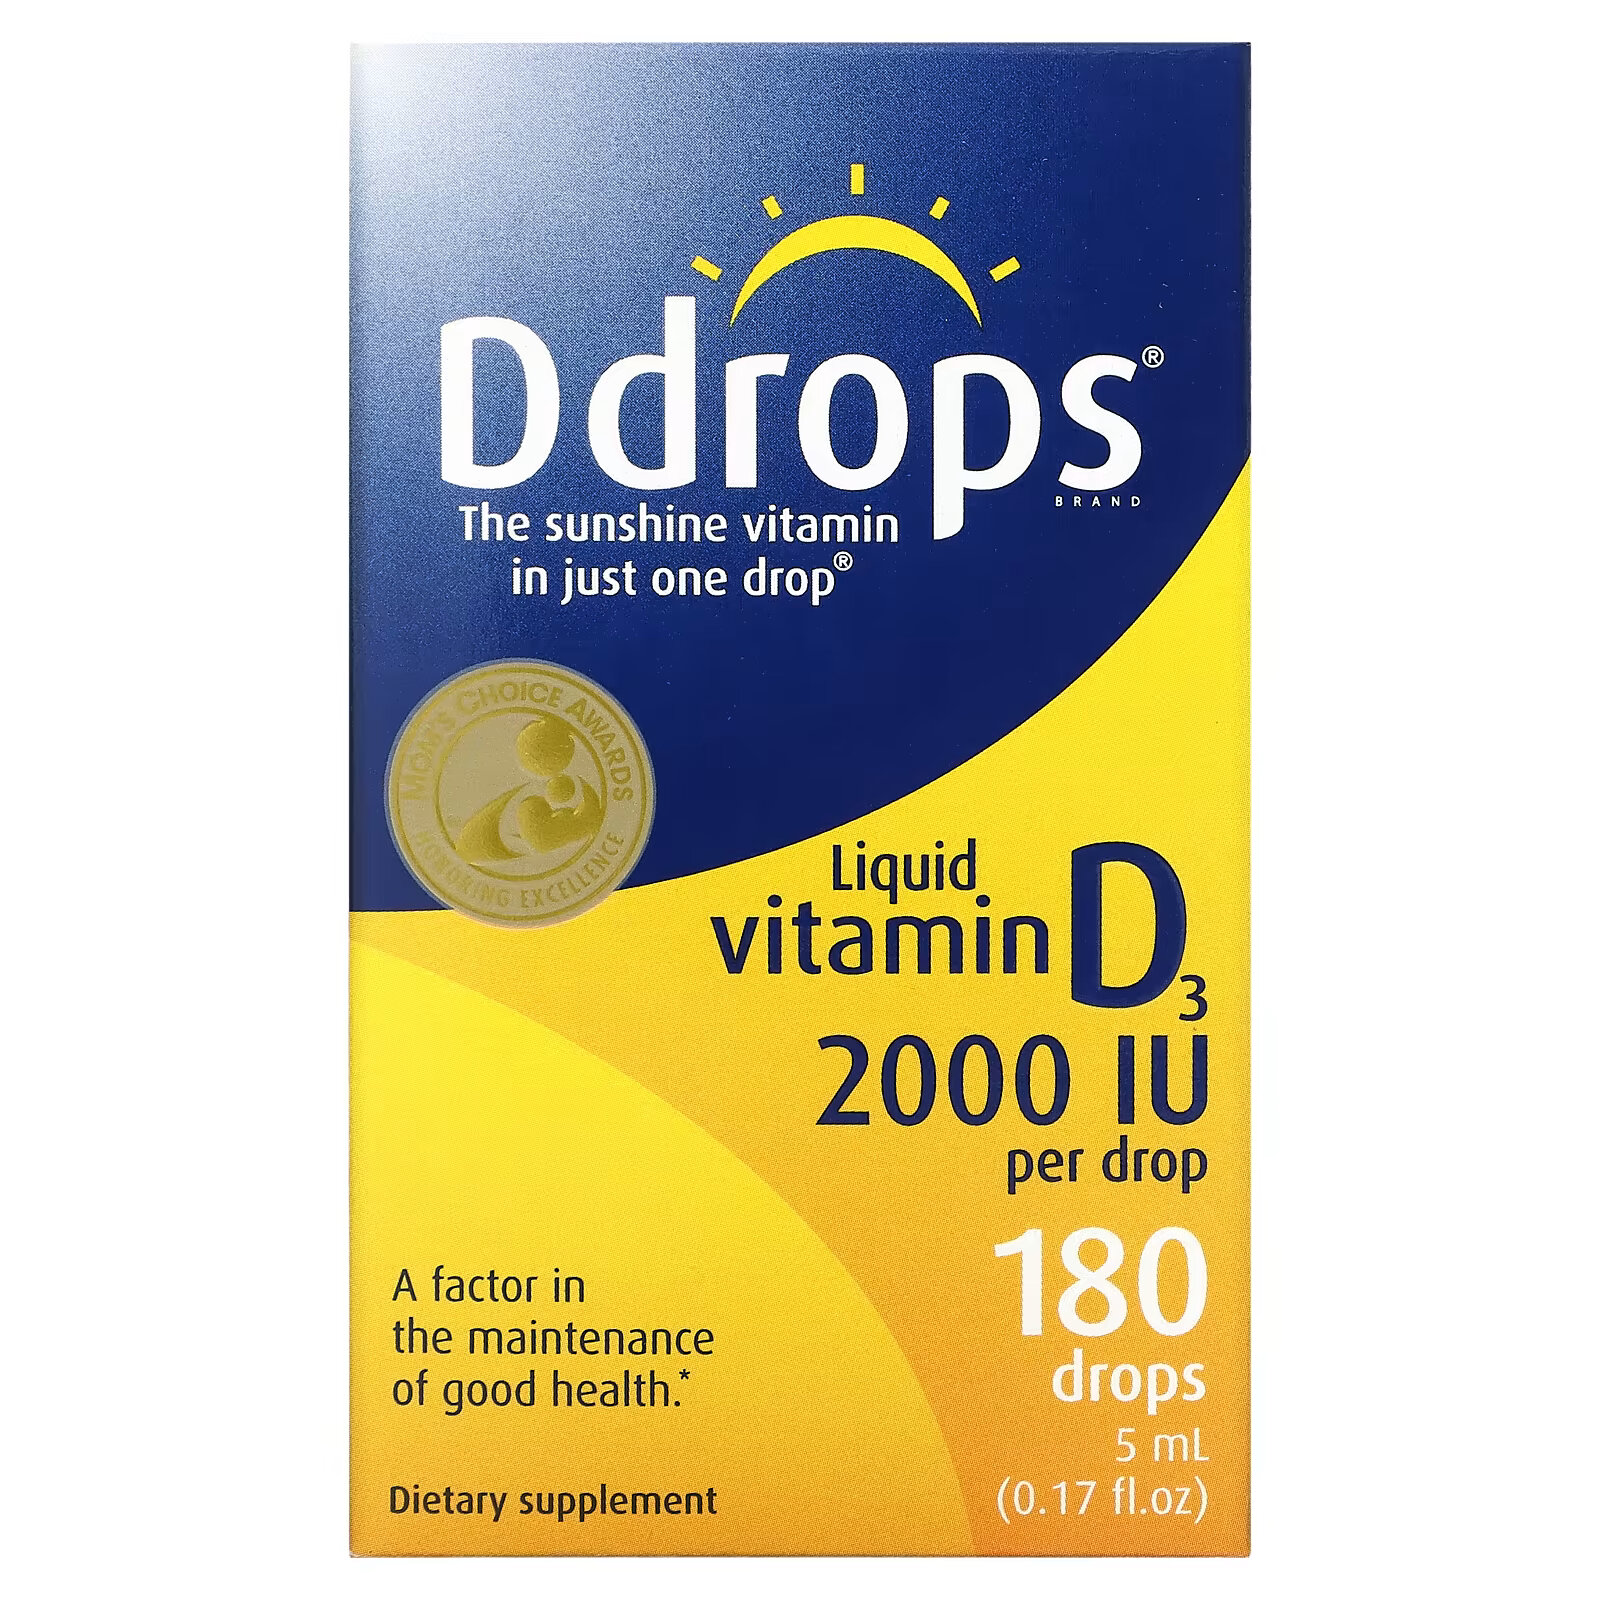 ddrops жидкий витамин d3 для детей 400 ме 90 капель 2 5 мл 0 08 мл Ddrops, Жидкий витамин D3, 2000 МЕ, 5 мл (0,17 жидкой унции)